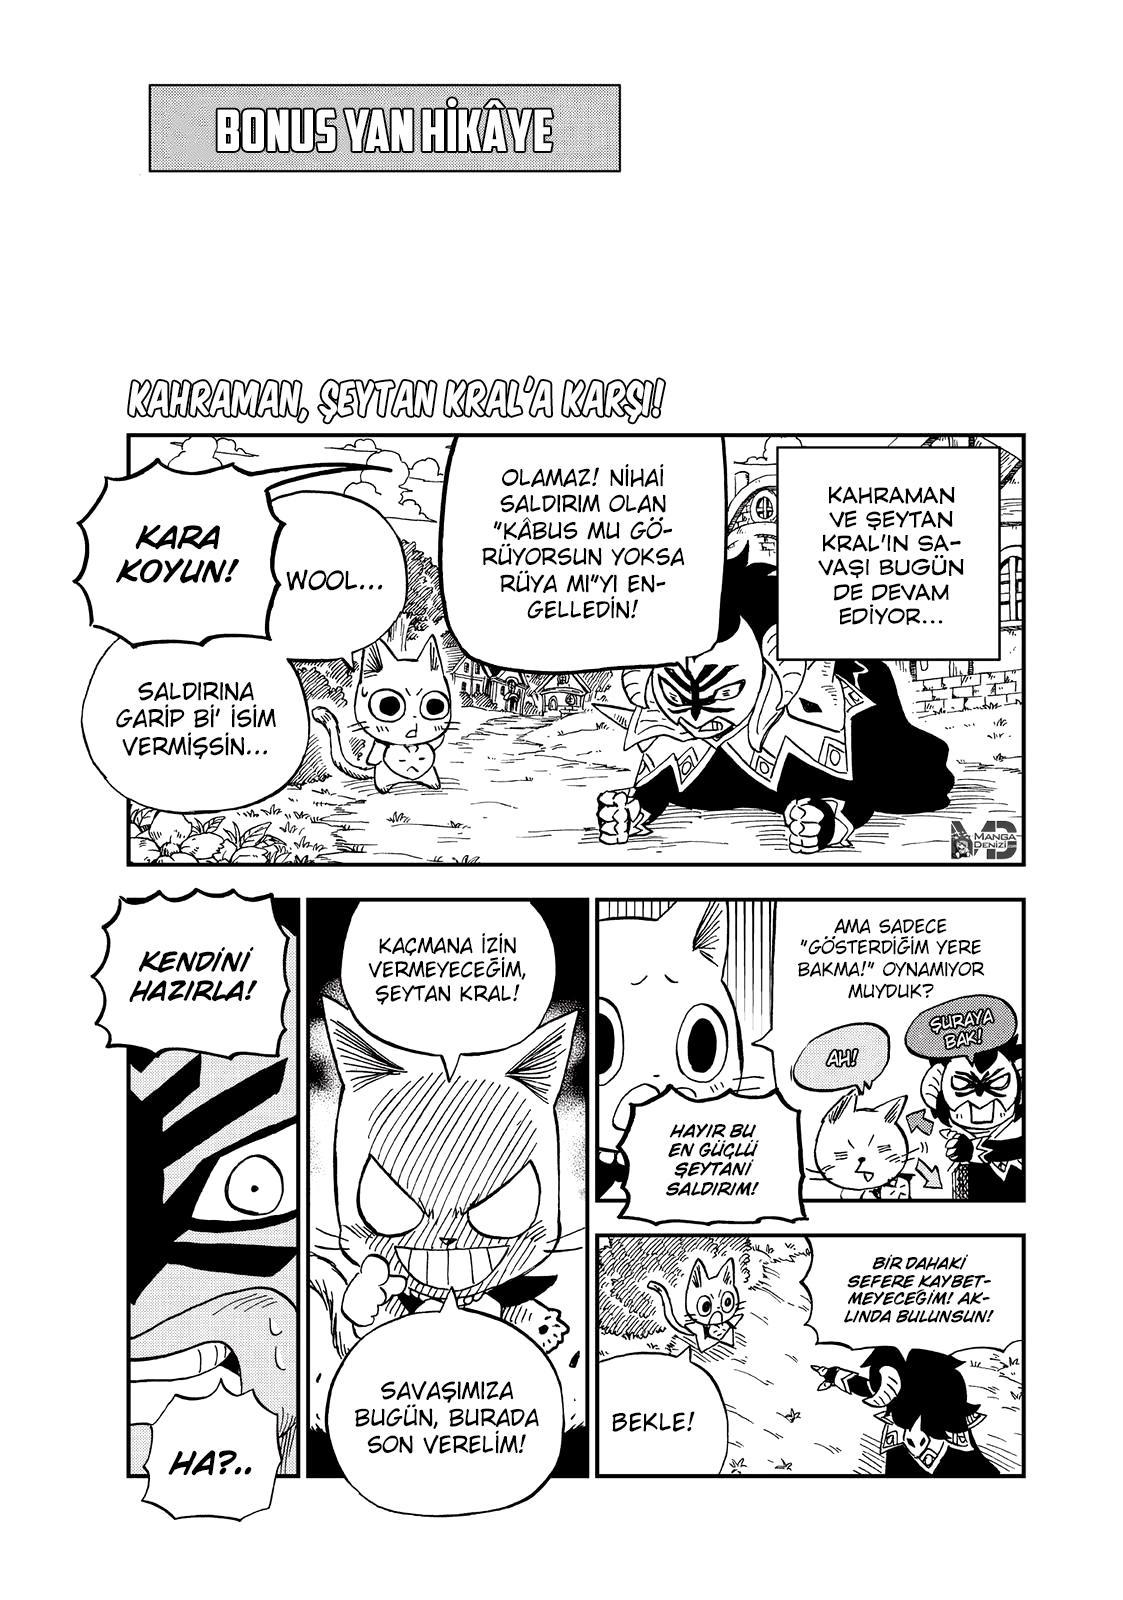 Fairy Tail: Happy's Great Adventure mangasının 60.5 bölümünün 2. sayfasını okuyorsunuz.